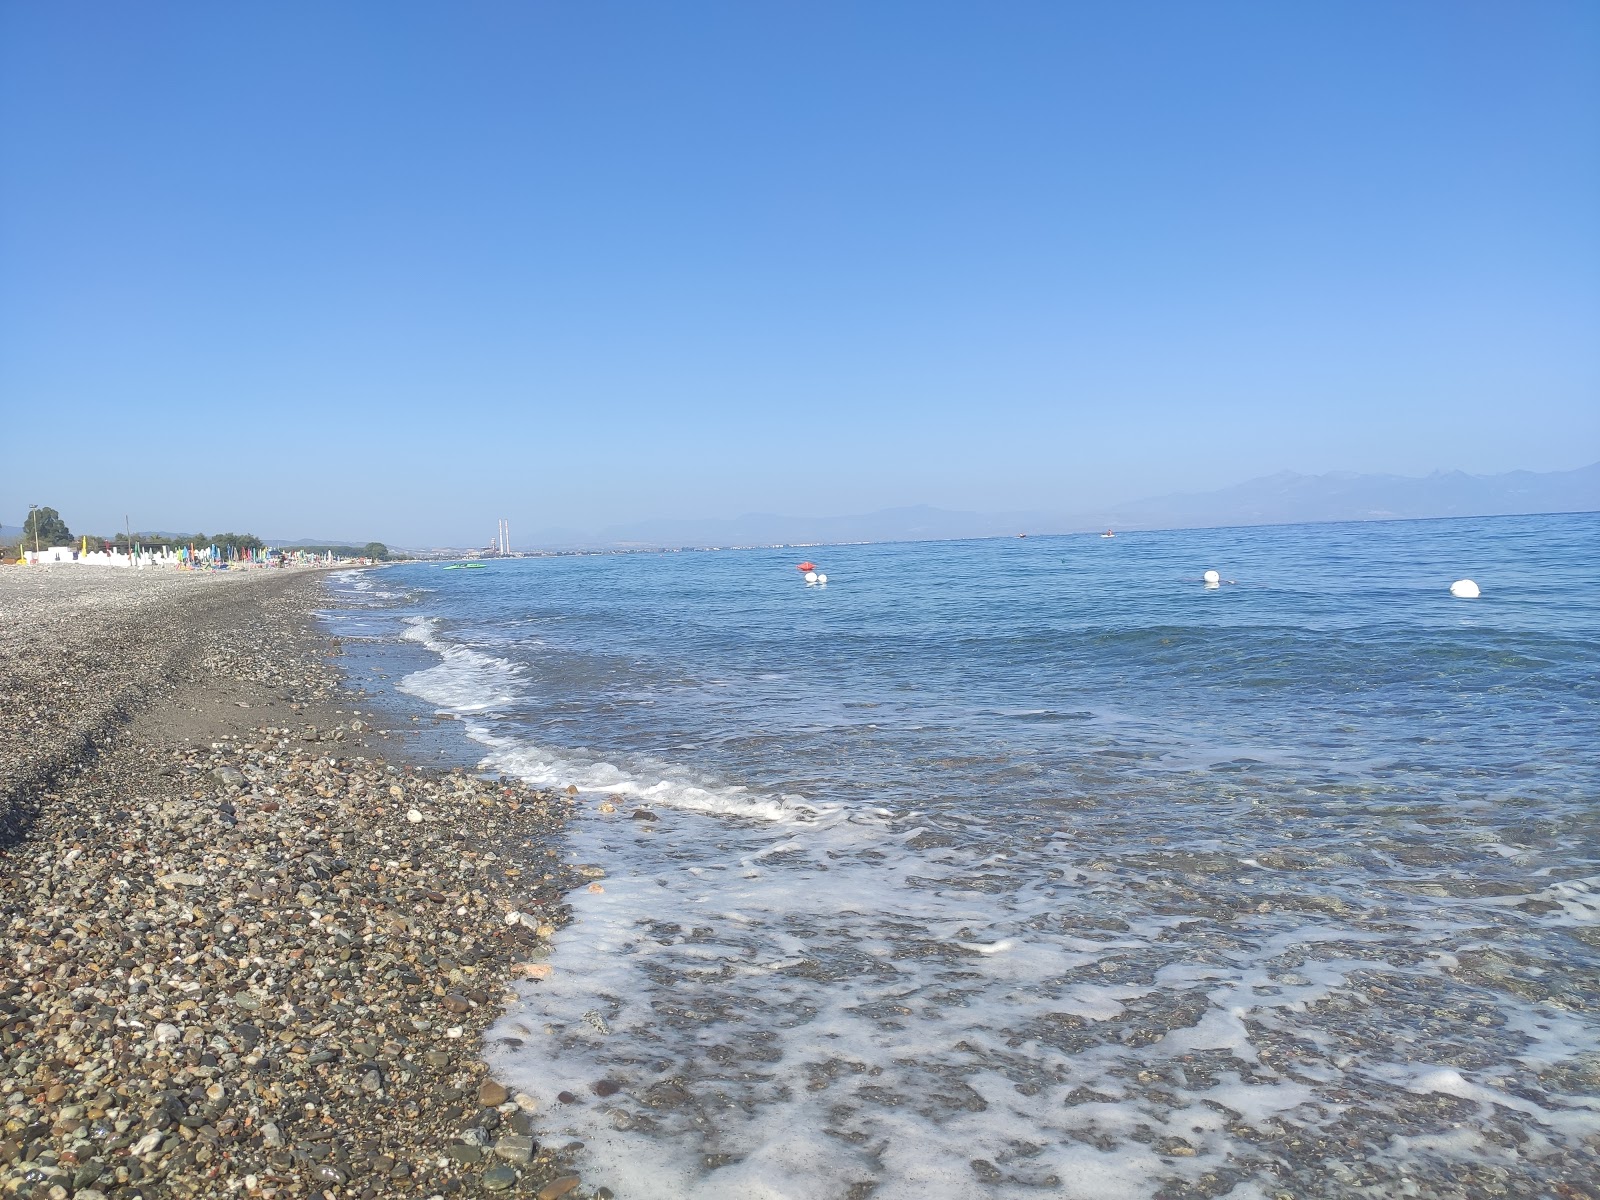 Gammicella beach'in fotoğrafı gri kum ve çakıl yüzey ile